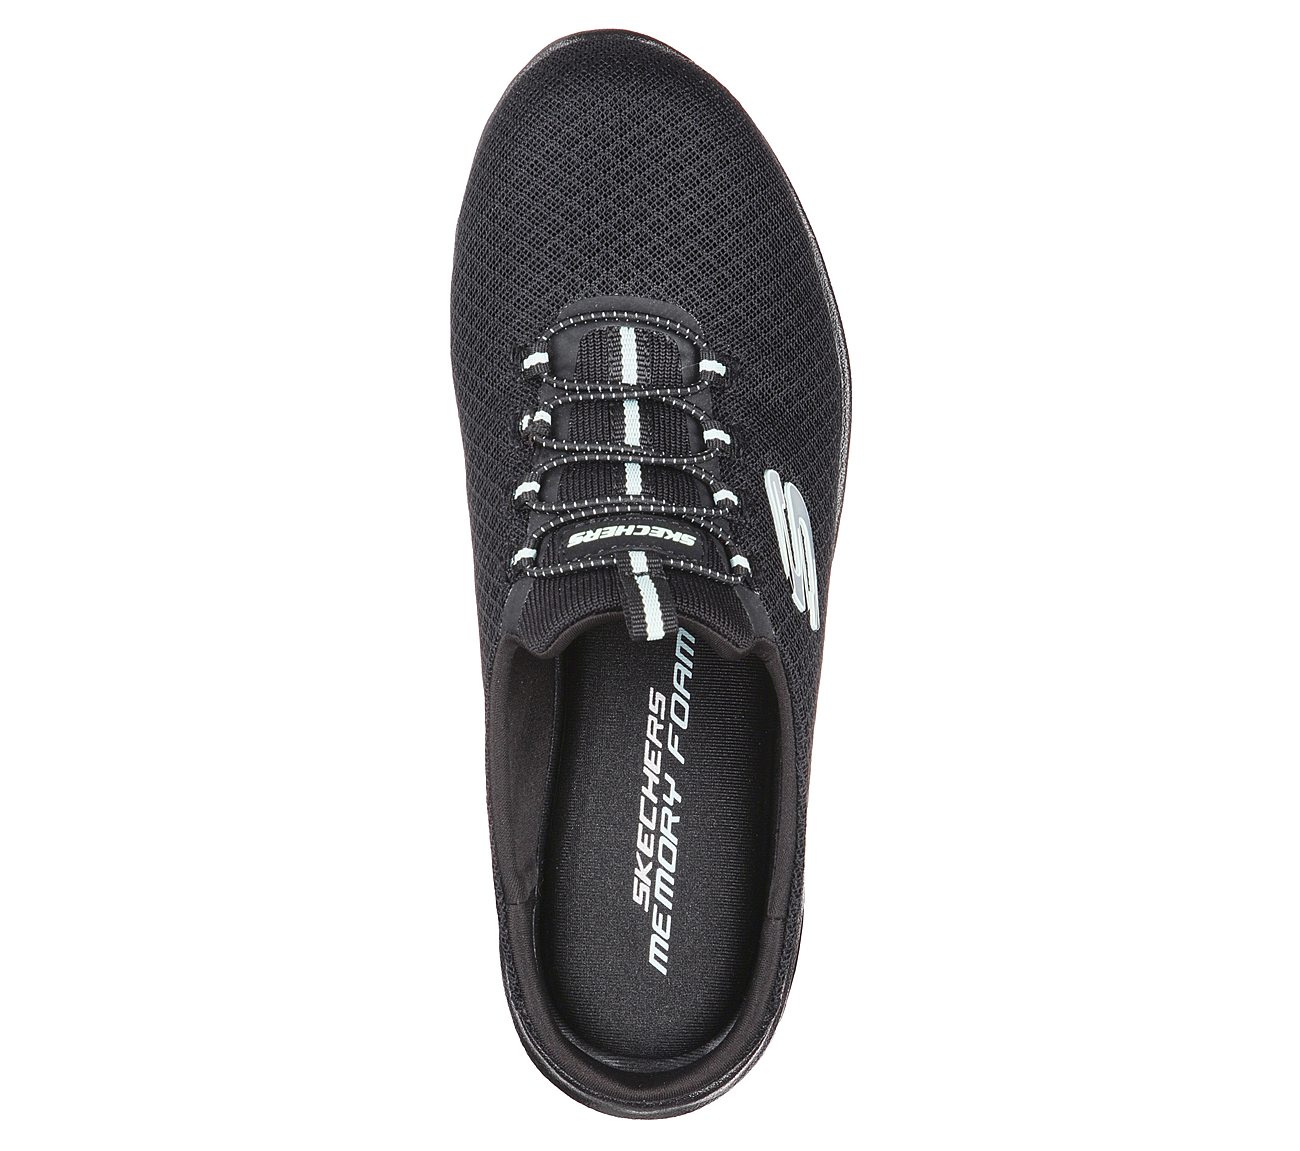 SUMMITS - SWIFT STEP, BLACK/AQUA Footwear Top View